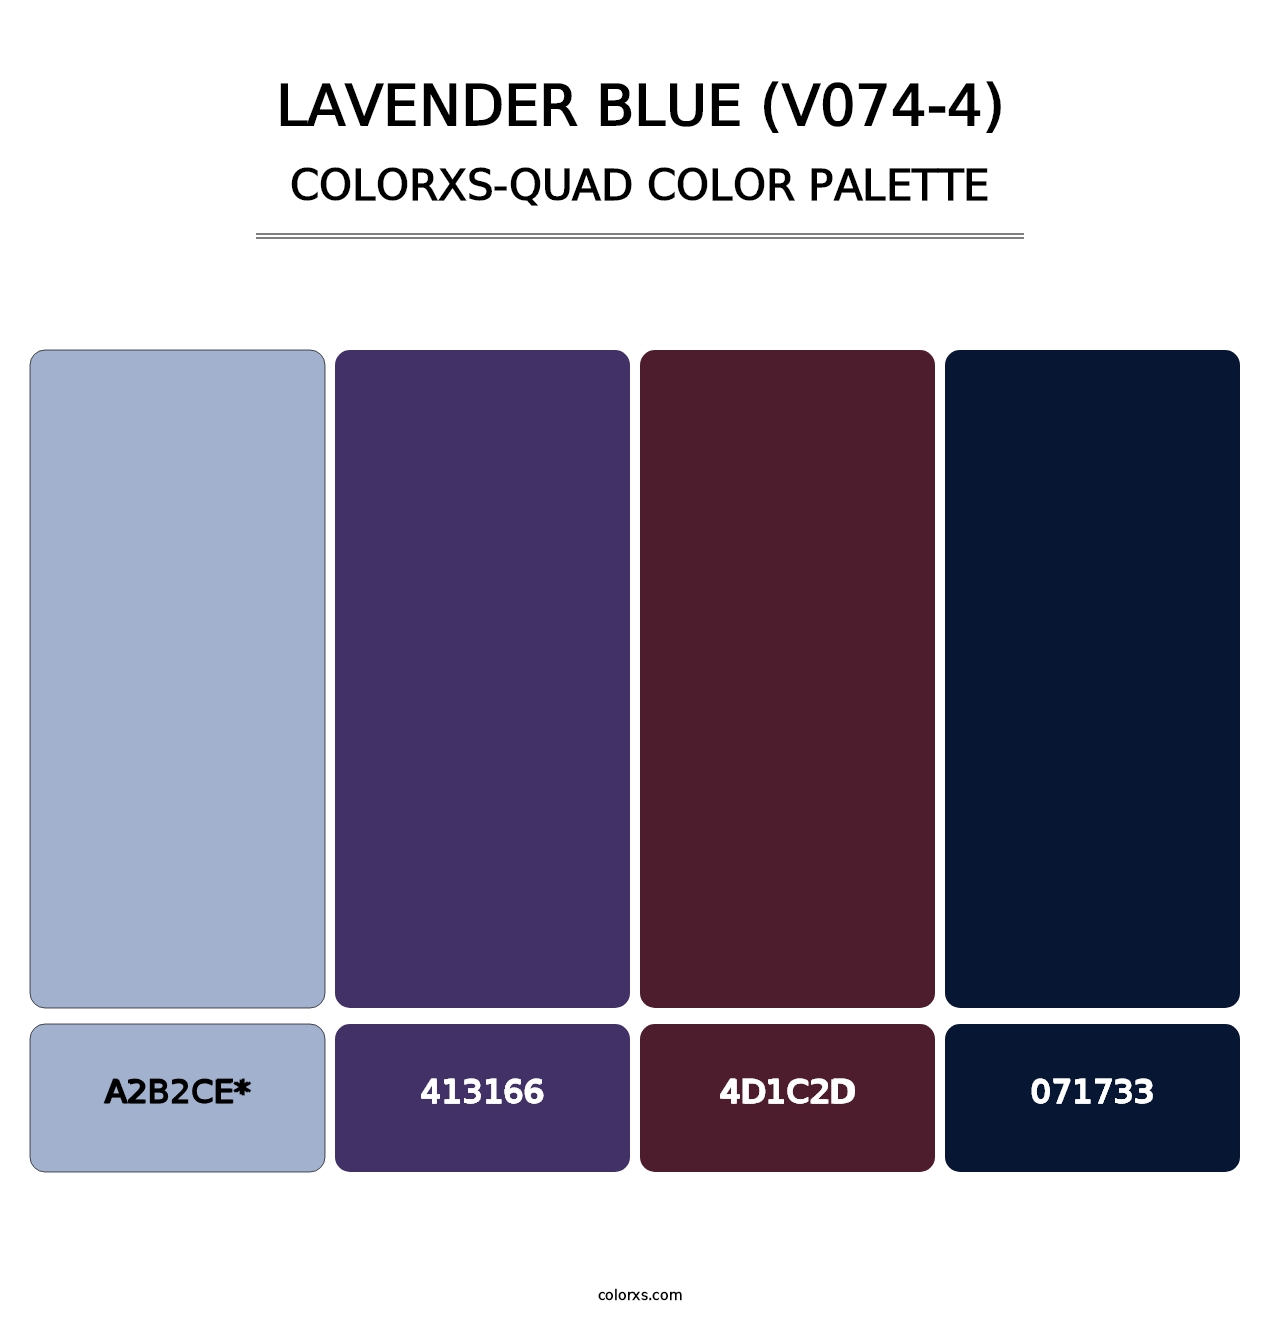 Lavender Blue (V074-4) - Colorxs Quad Palette